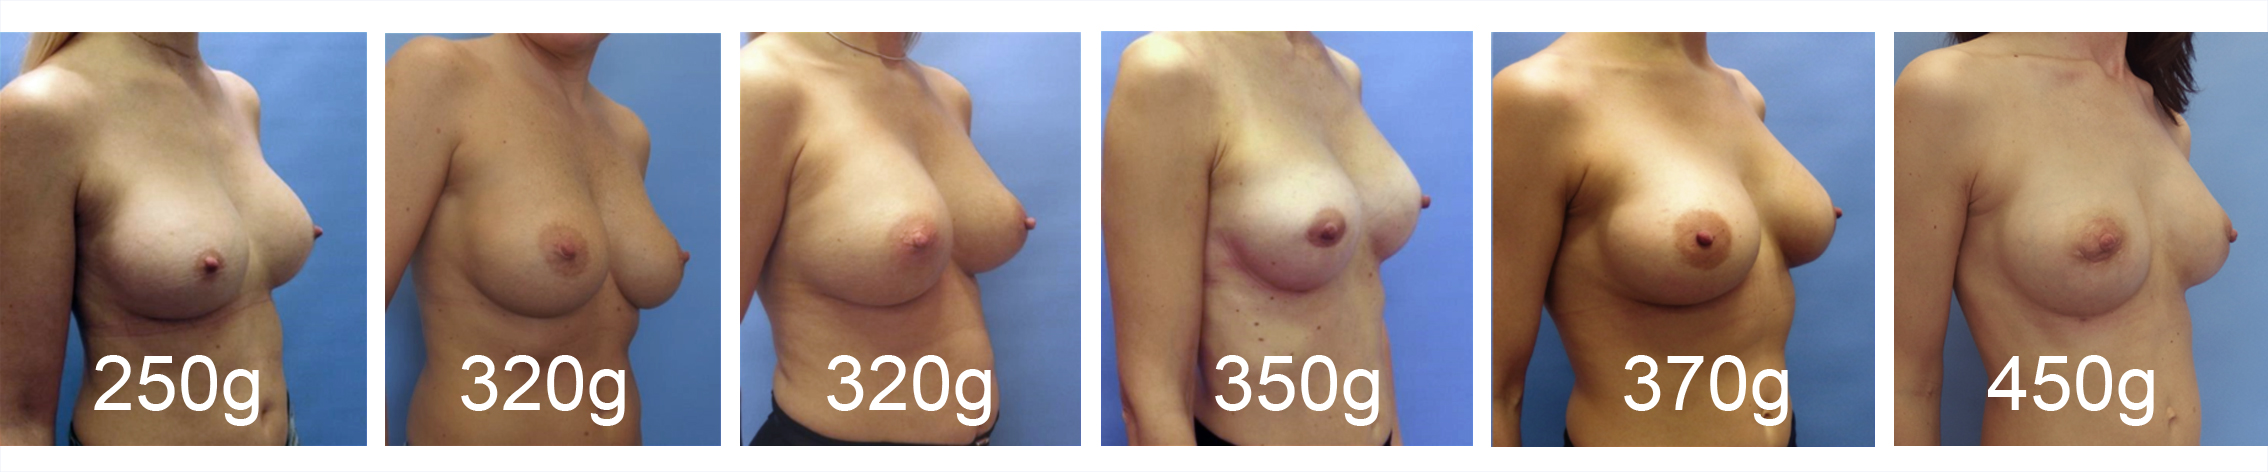 velikosti prsních implantátů